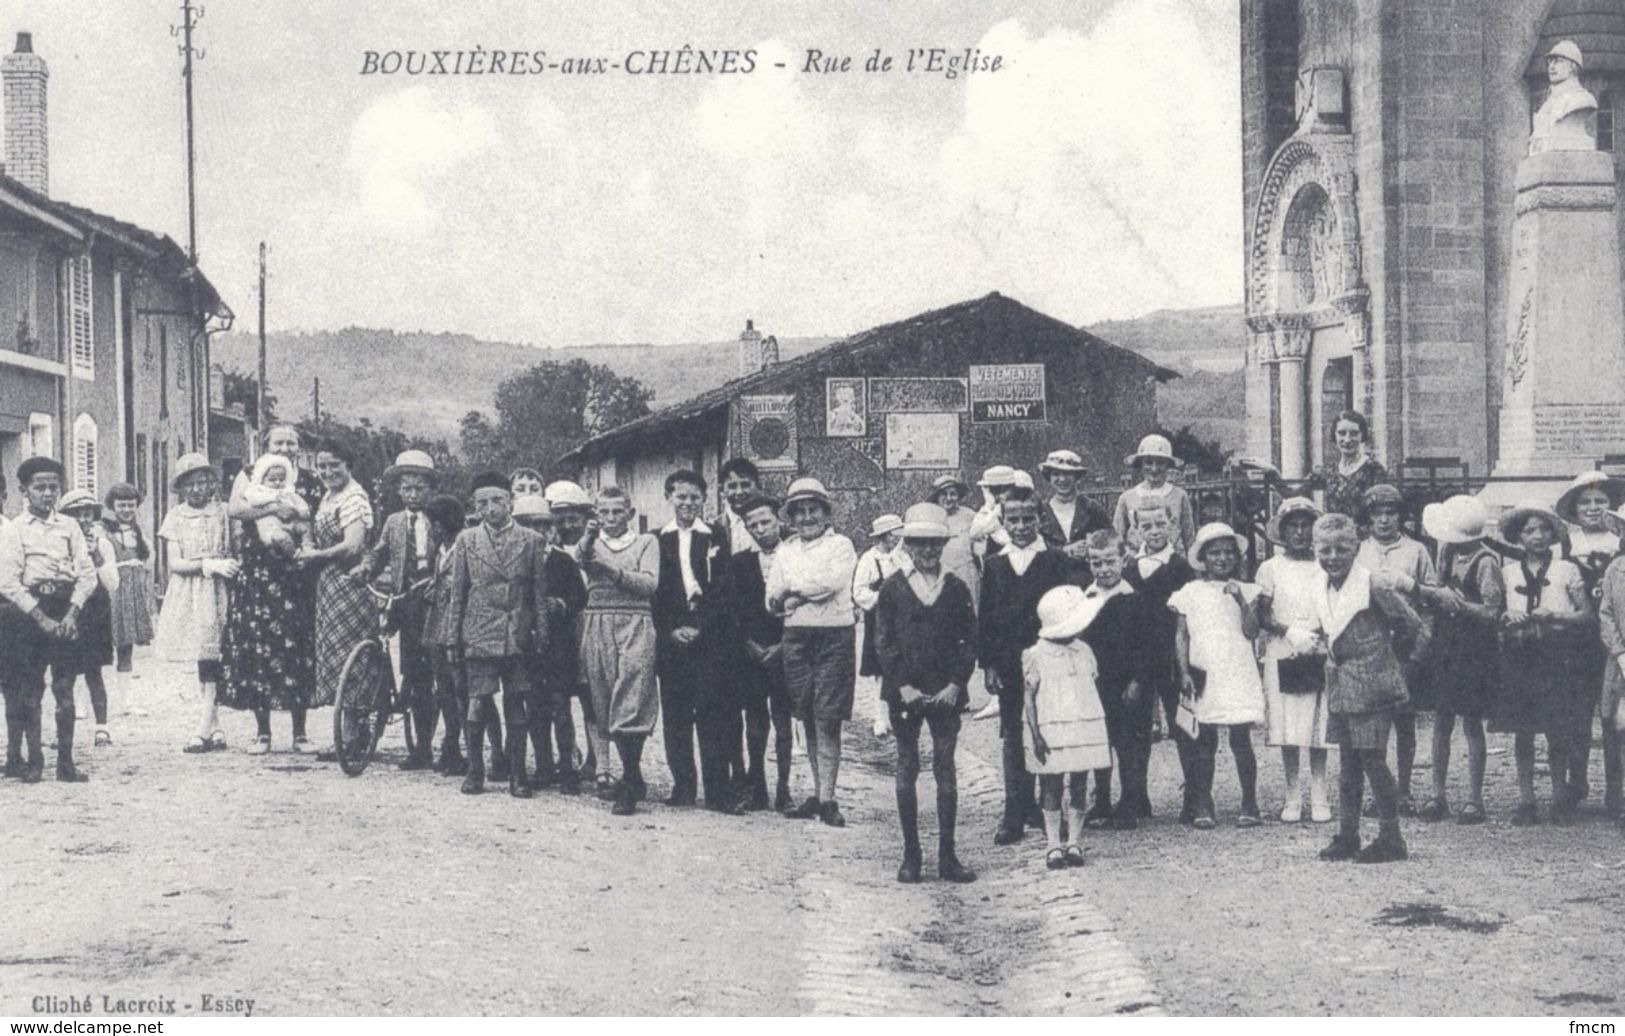 Bouxières-aux-Chênes, ensemble de 17 fac-similés édités en 1993